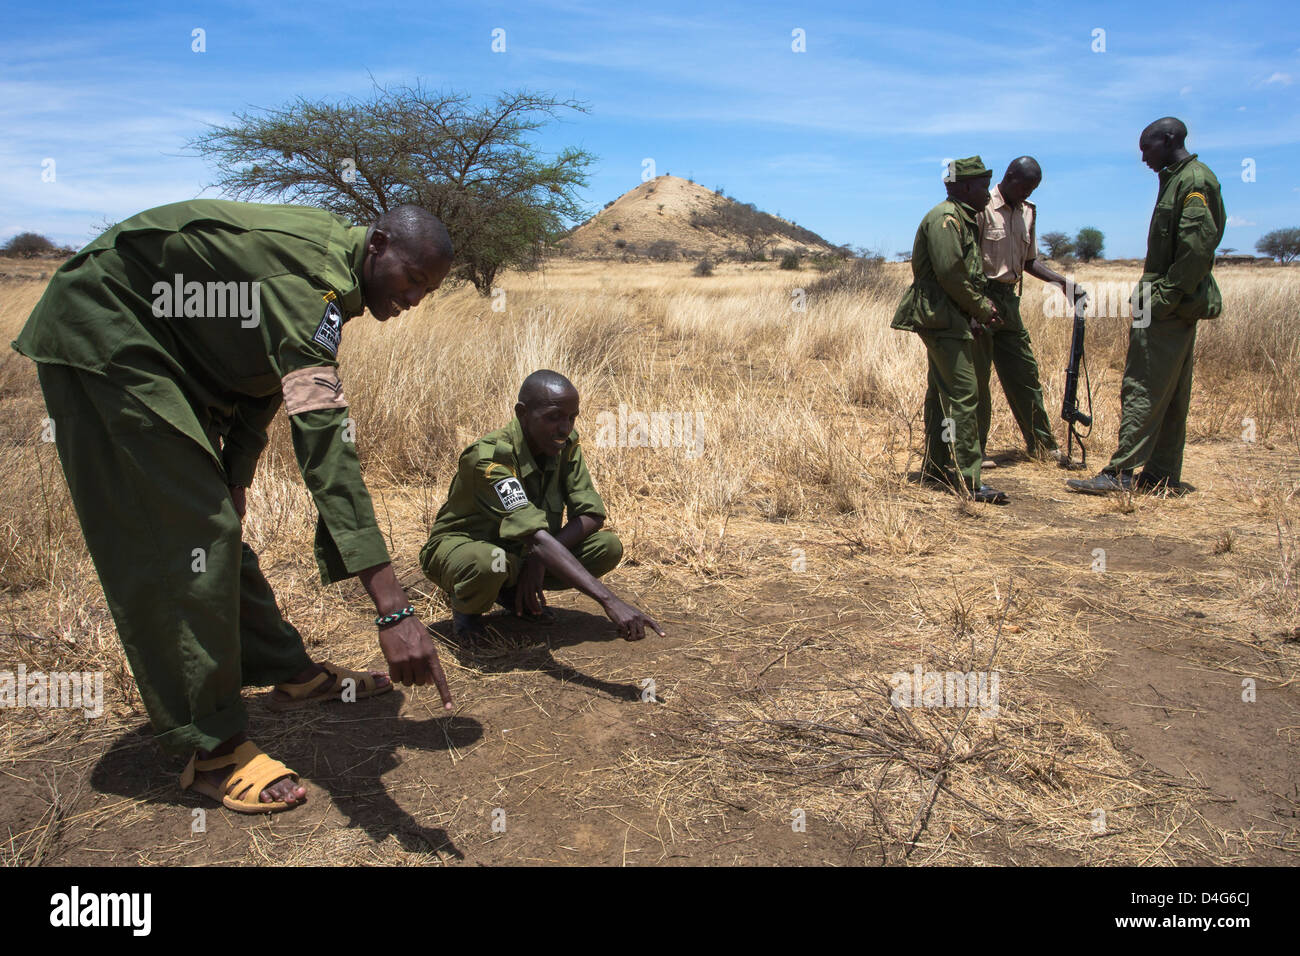 La patrouille anti-braconnage, Mbirikani Amboseli-Tsavo du Ranch de groupe, l'éco-système, Chyulu Hills, le Kenya, l'Afrique, octobre 2012 Banque D'Images